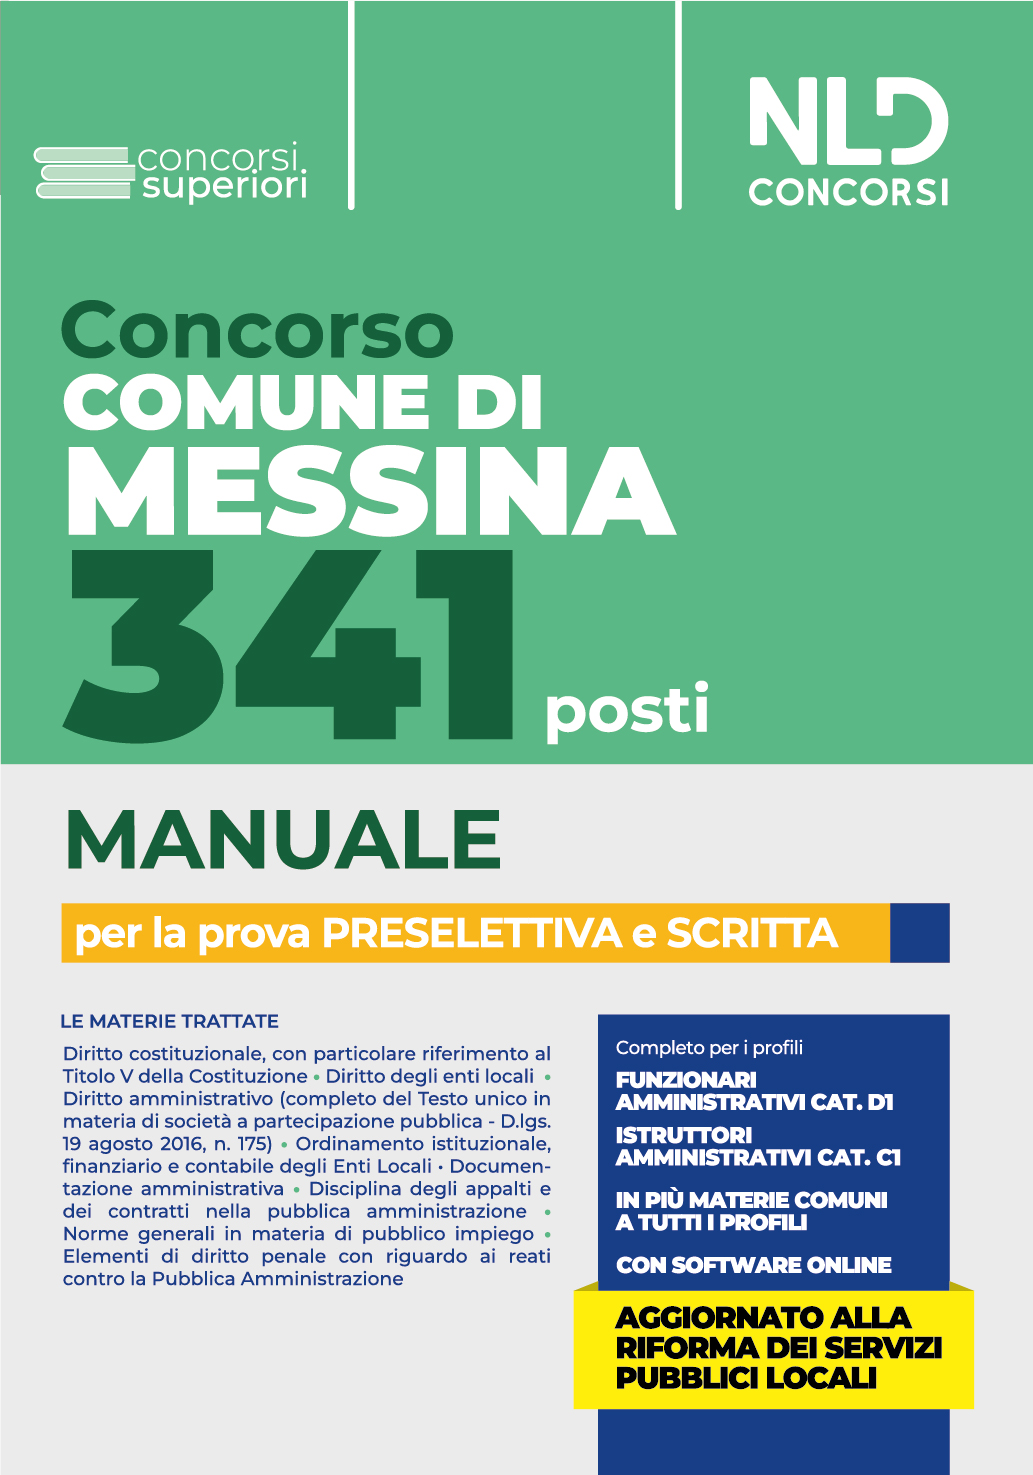 Concorso Comune di Messina: Manuale Completo 341 posti - vari profili